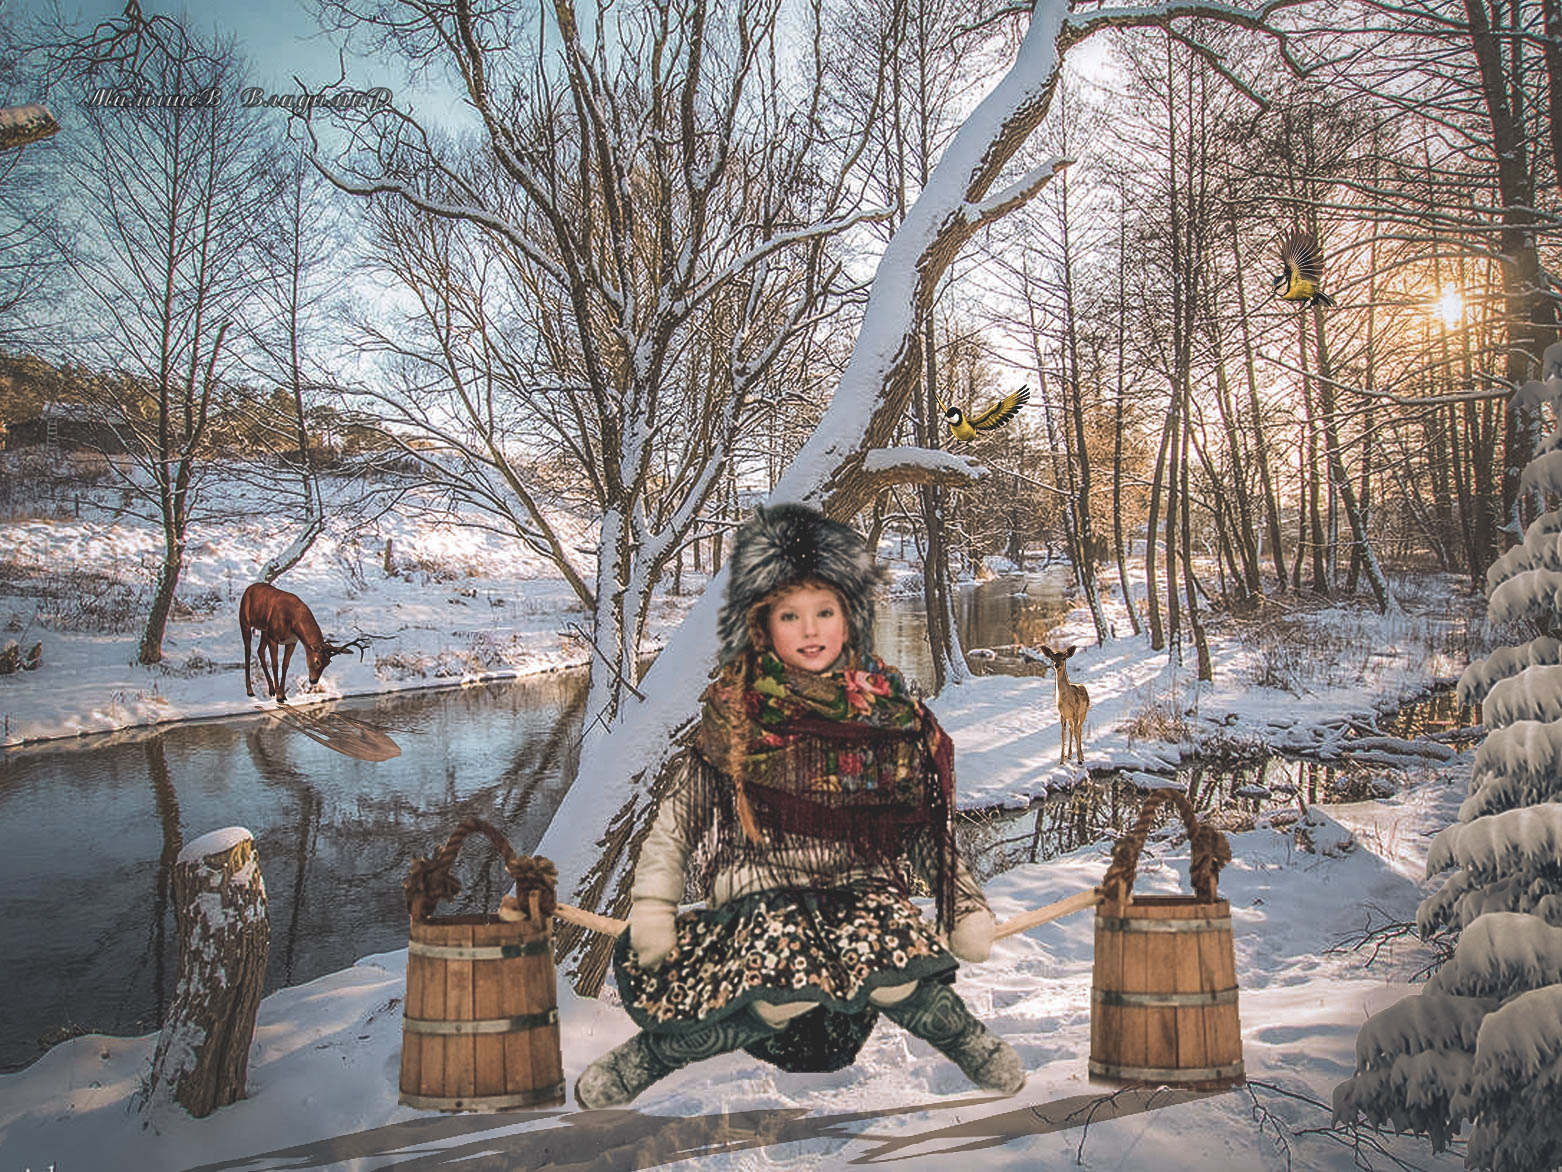 Фото В зимнем лесу девочка присела отдохнуть у реки, by Владимир Малышев